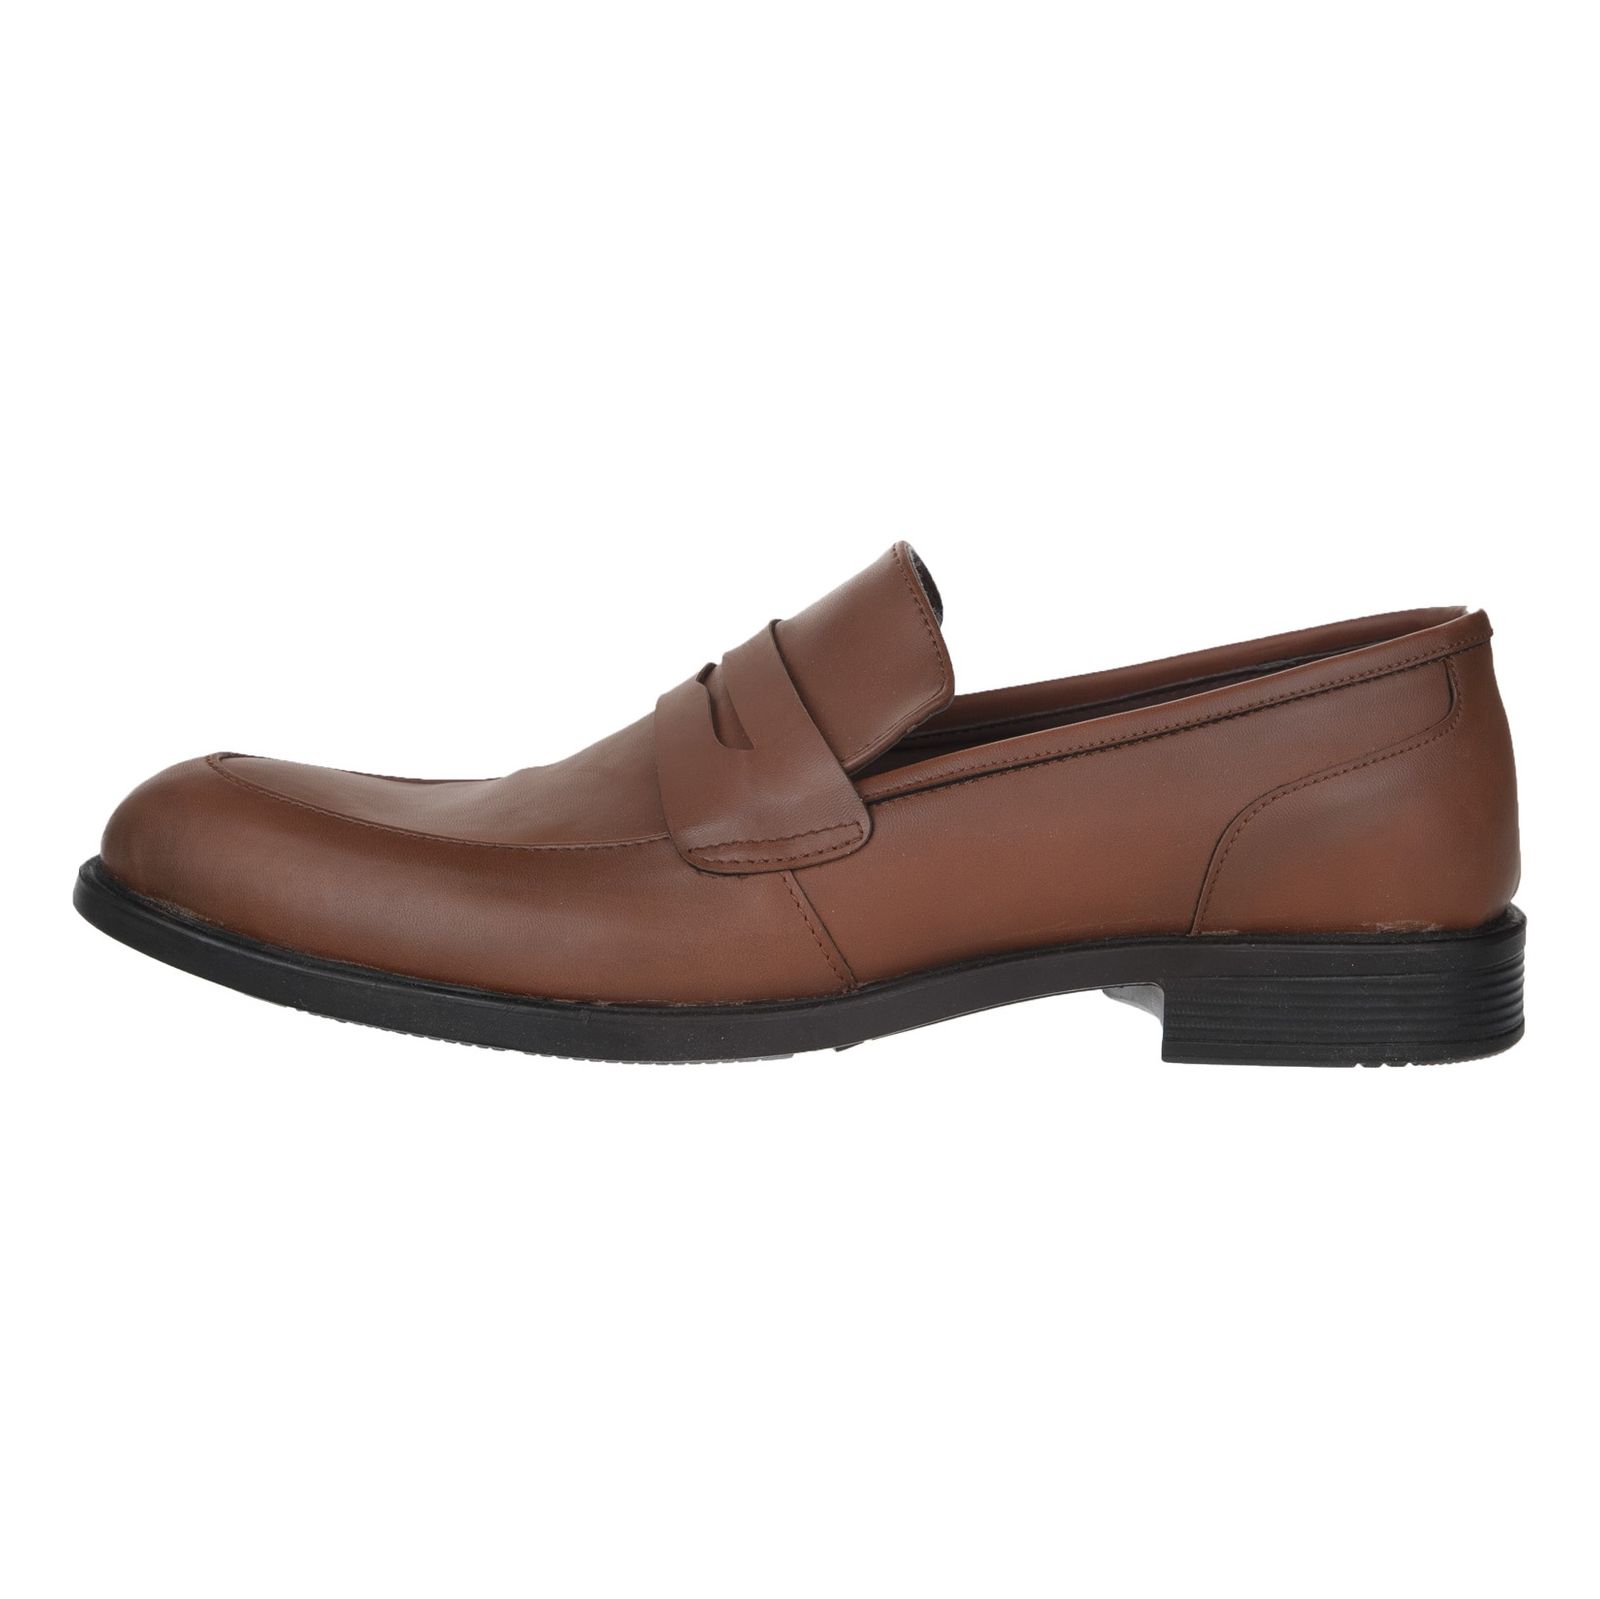 کفش مردانه پولاریس مدل 100243628-122 - قهوه ای - 2